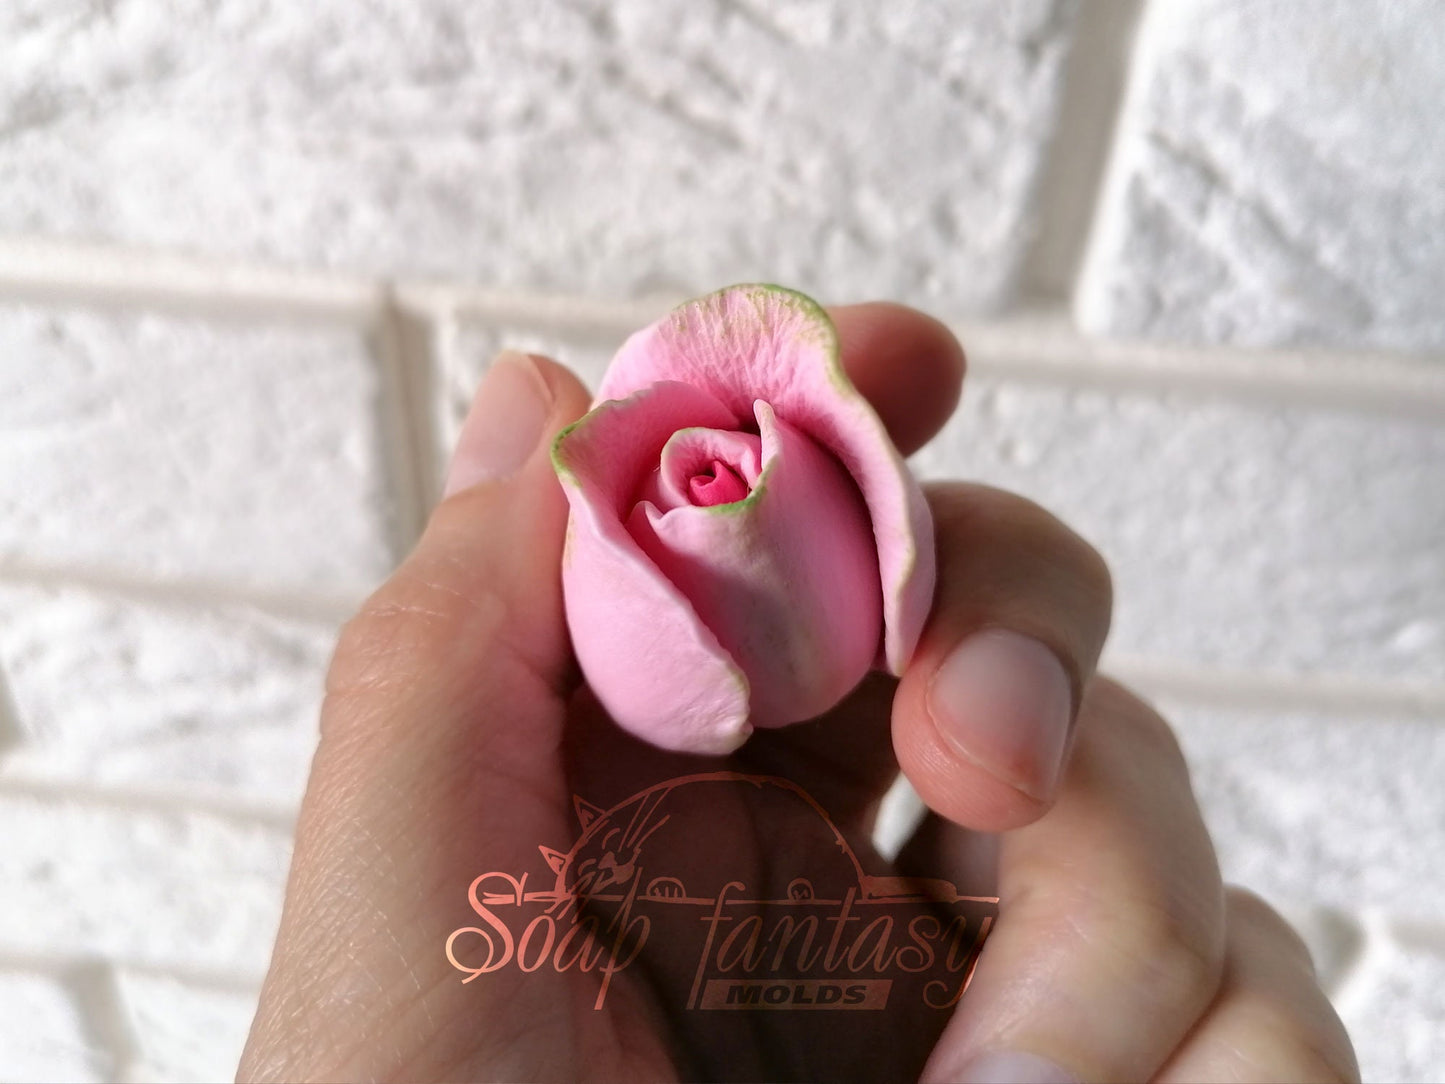 Rose bud "Iguazu" silicone mold for soap making